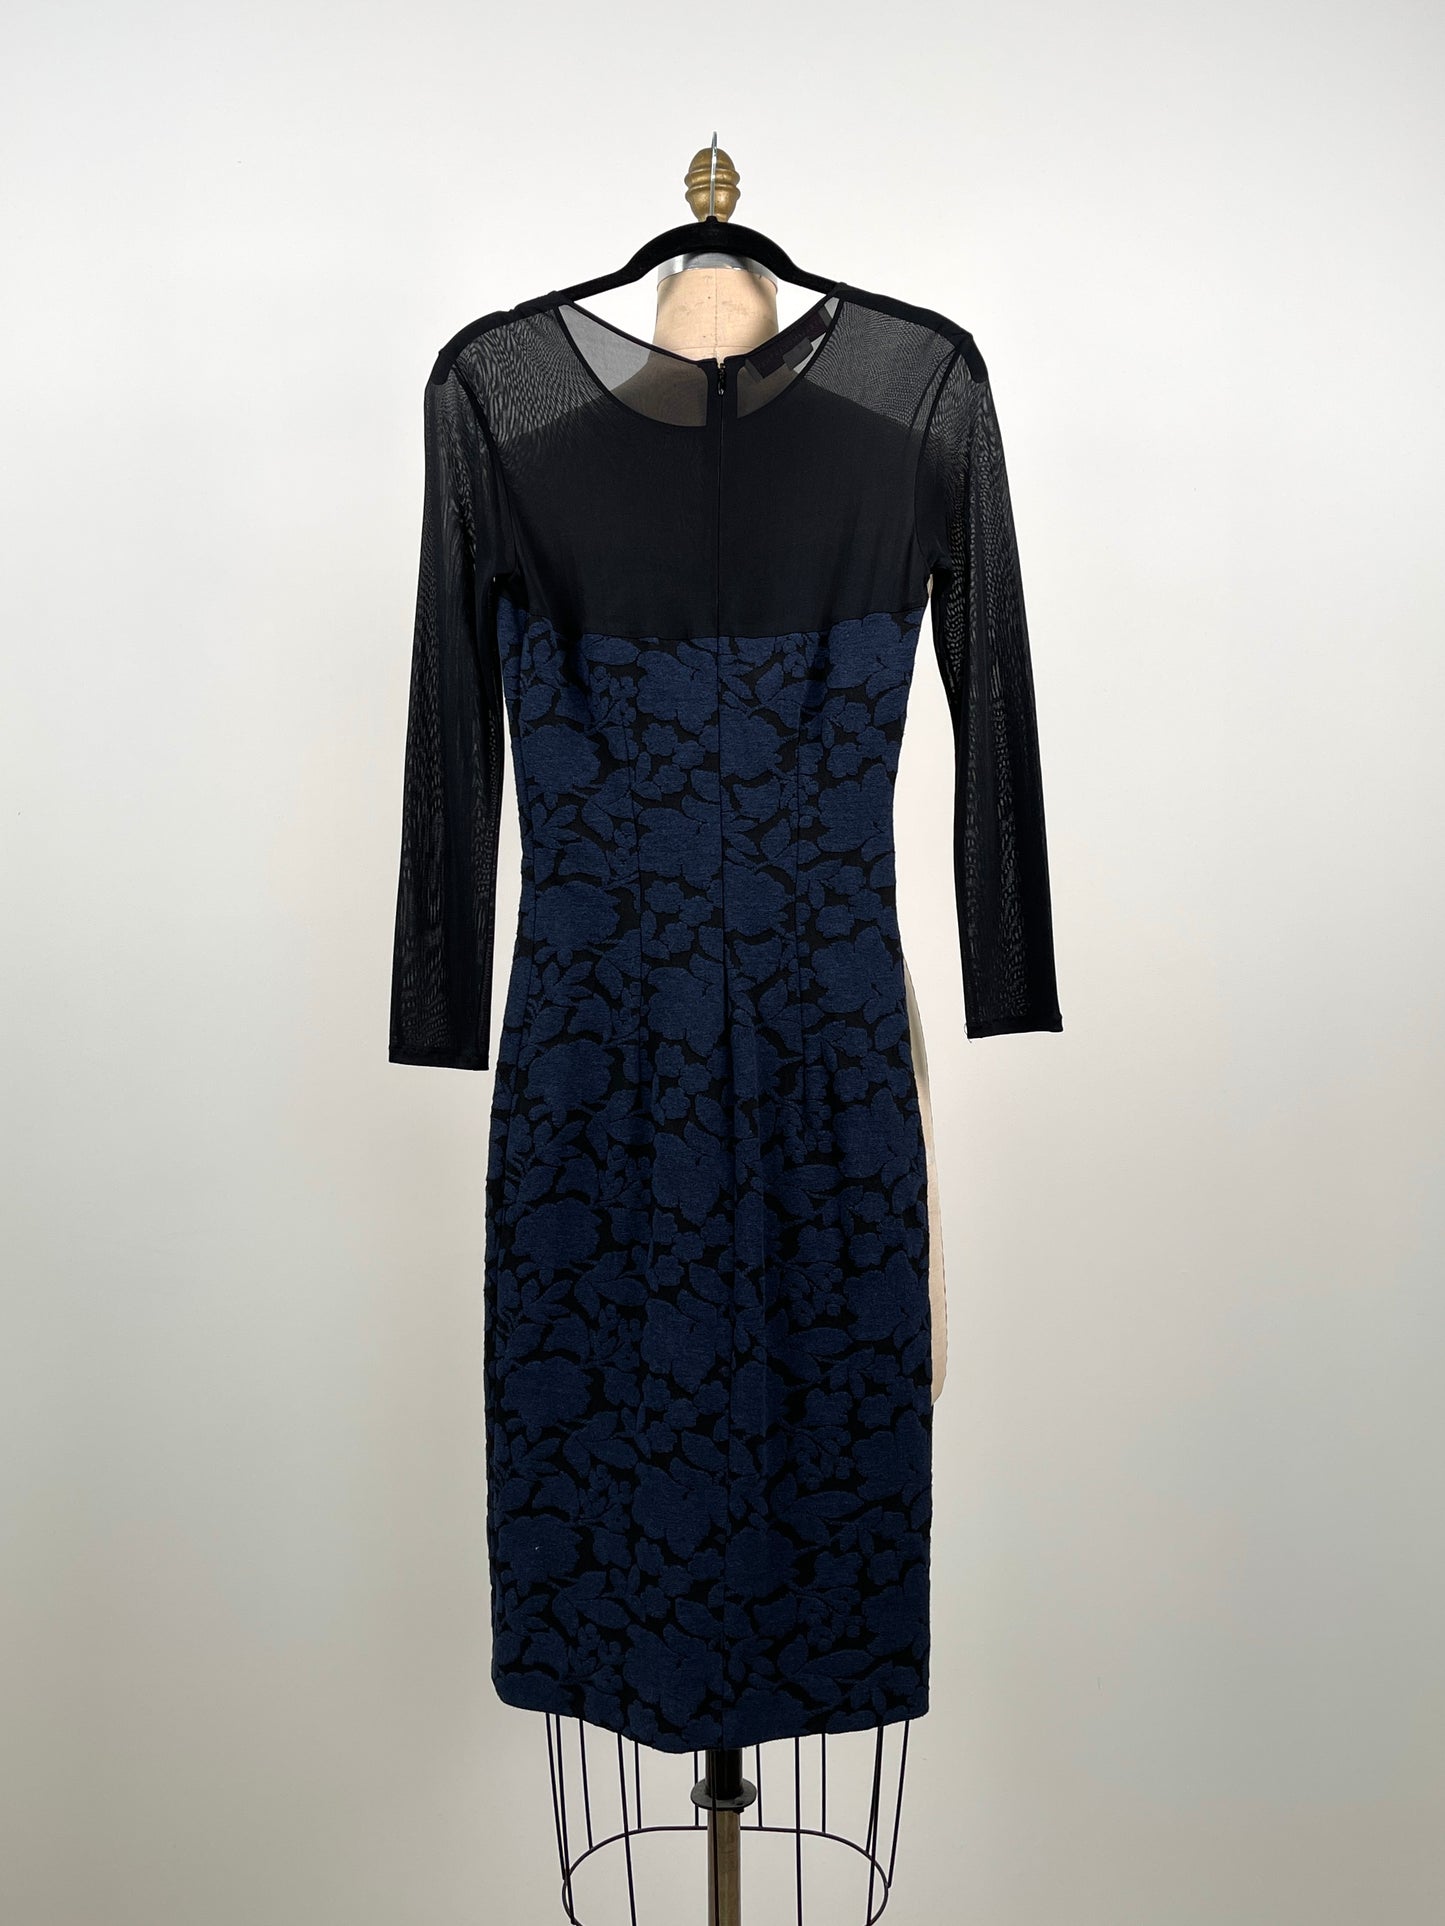 Robe noire ajustée à imprimés floraux texturés bleu et rouge (XXS)